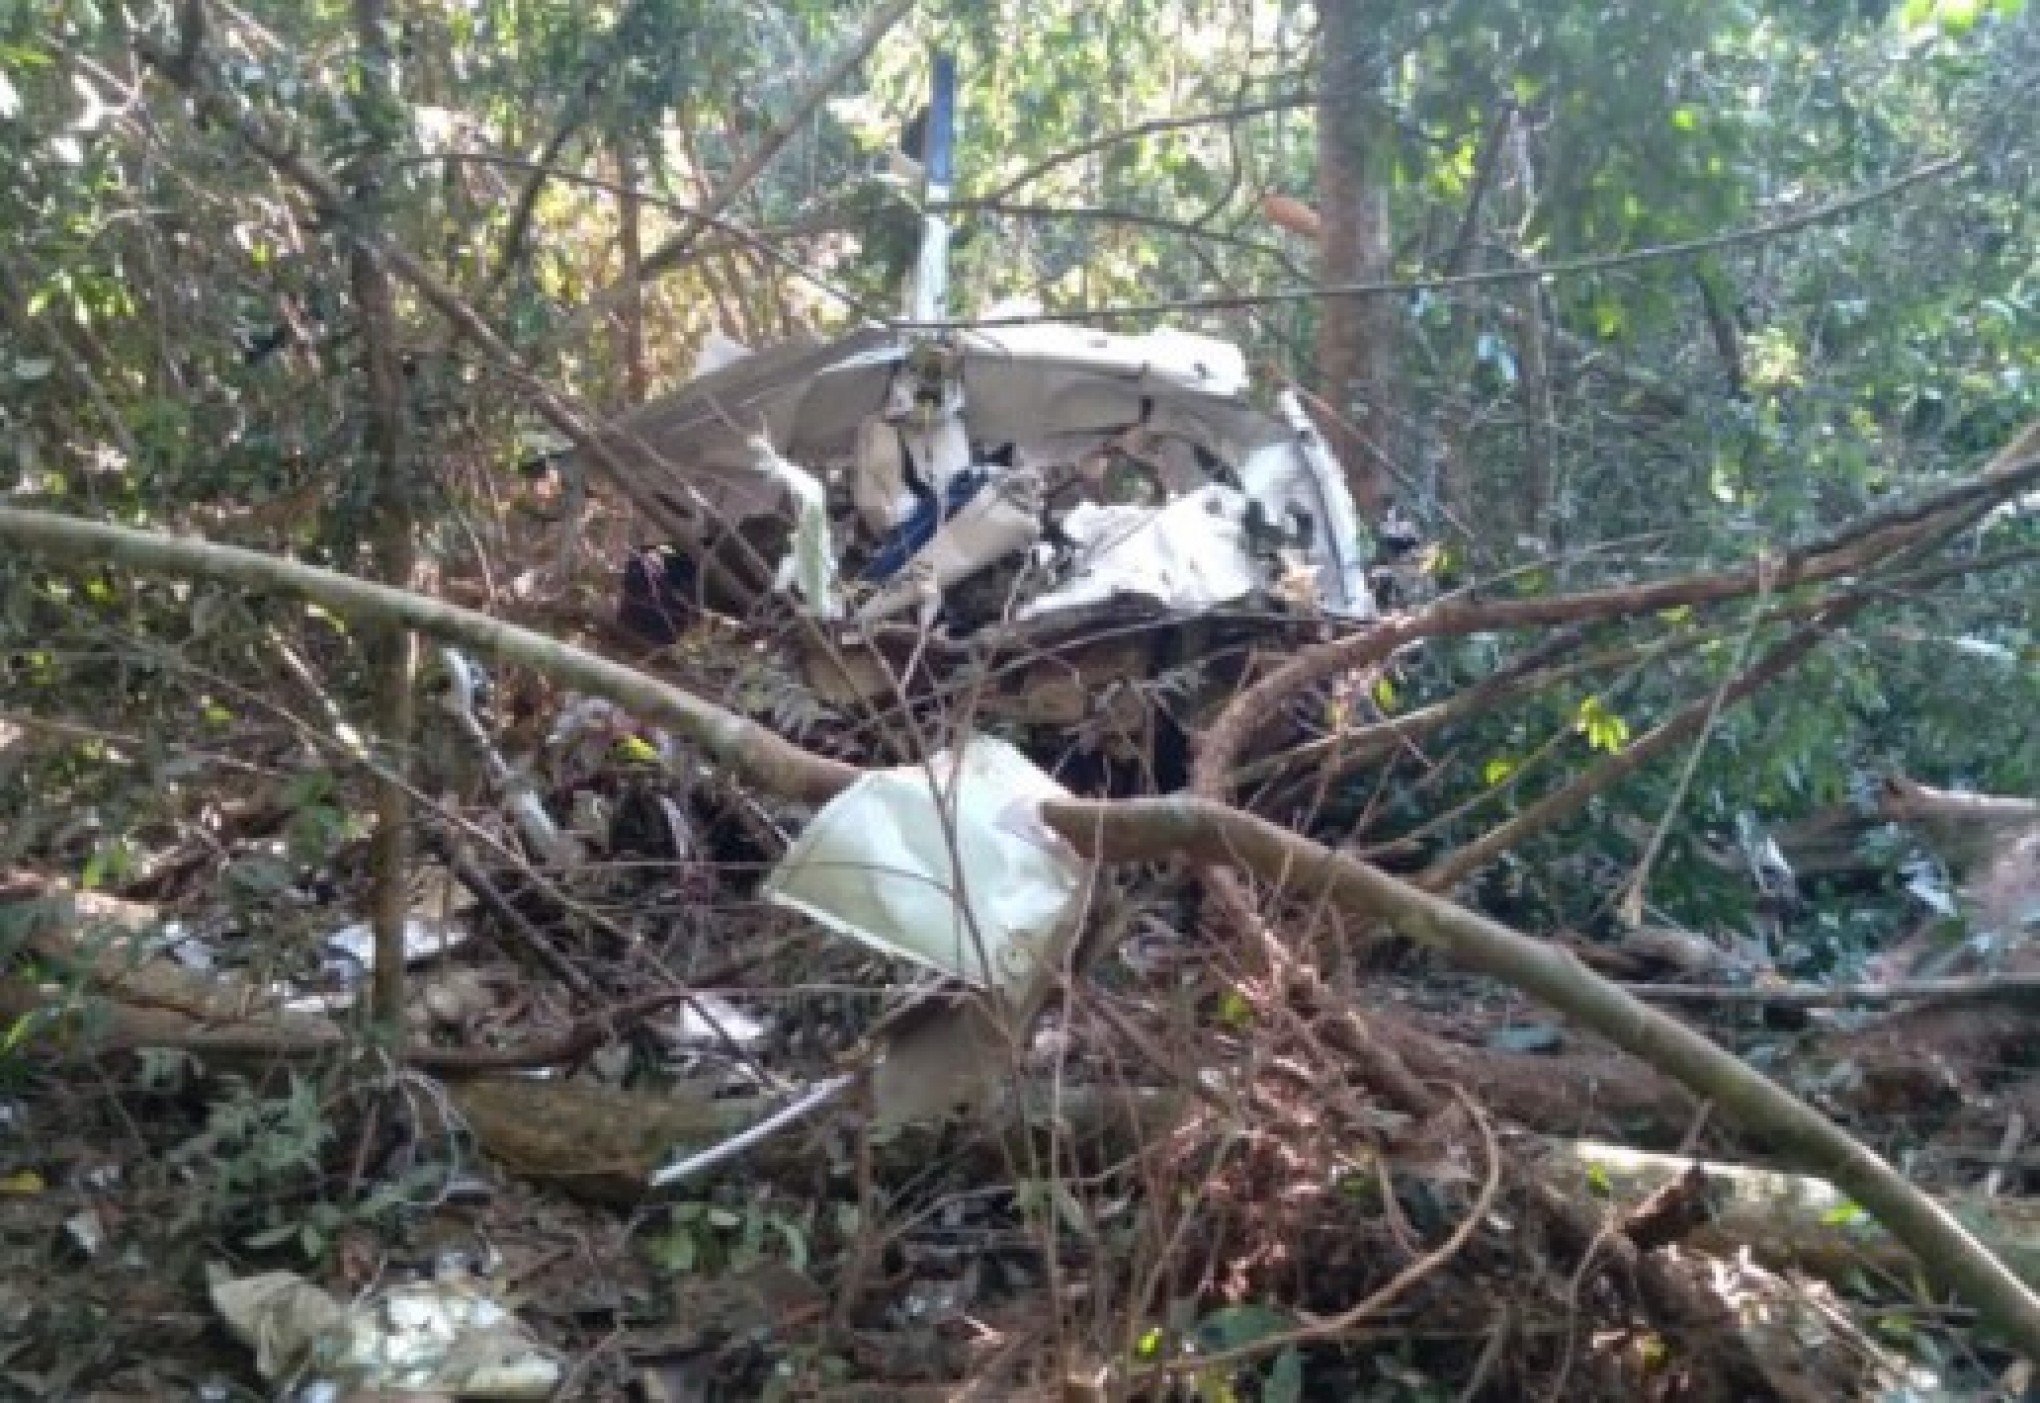 Pecuarista e filho de 12 anos morrem após queda de avião; bimotor desapareceu do radar com cinco minutos de voo